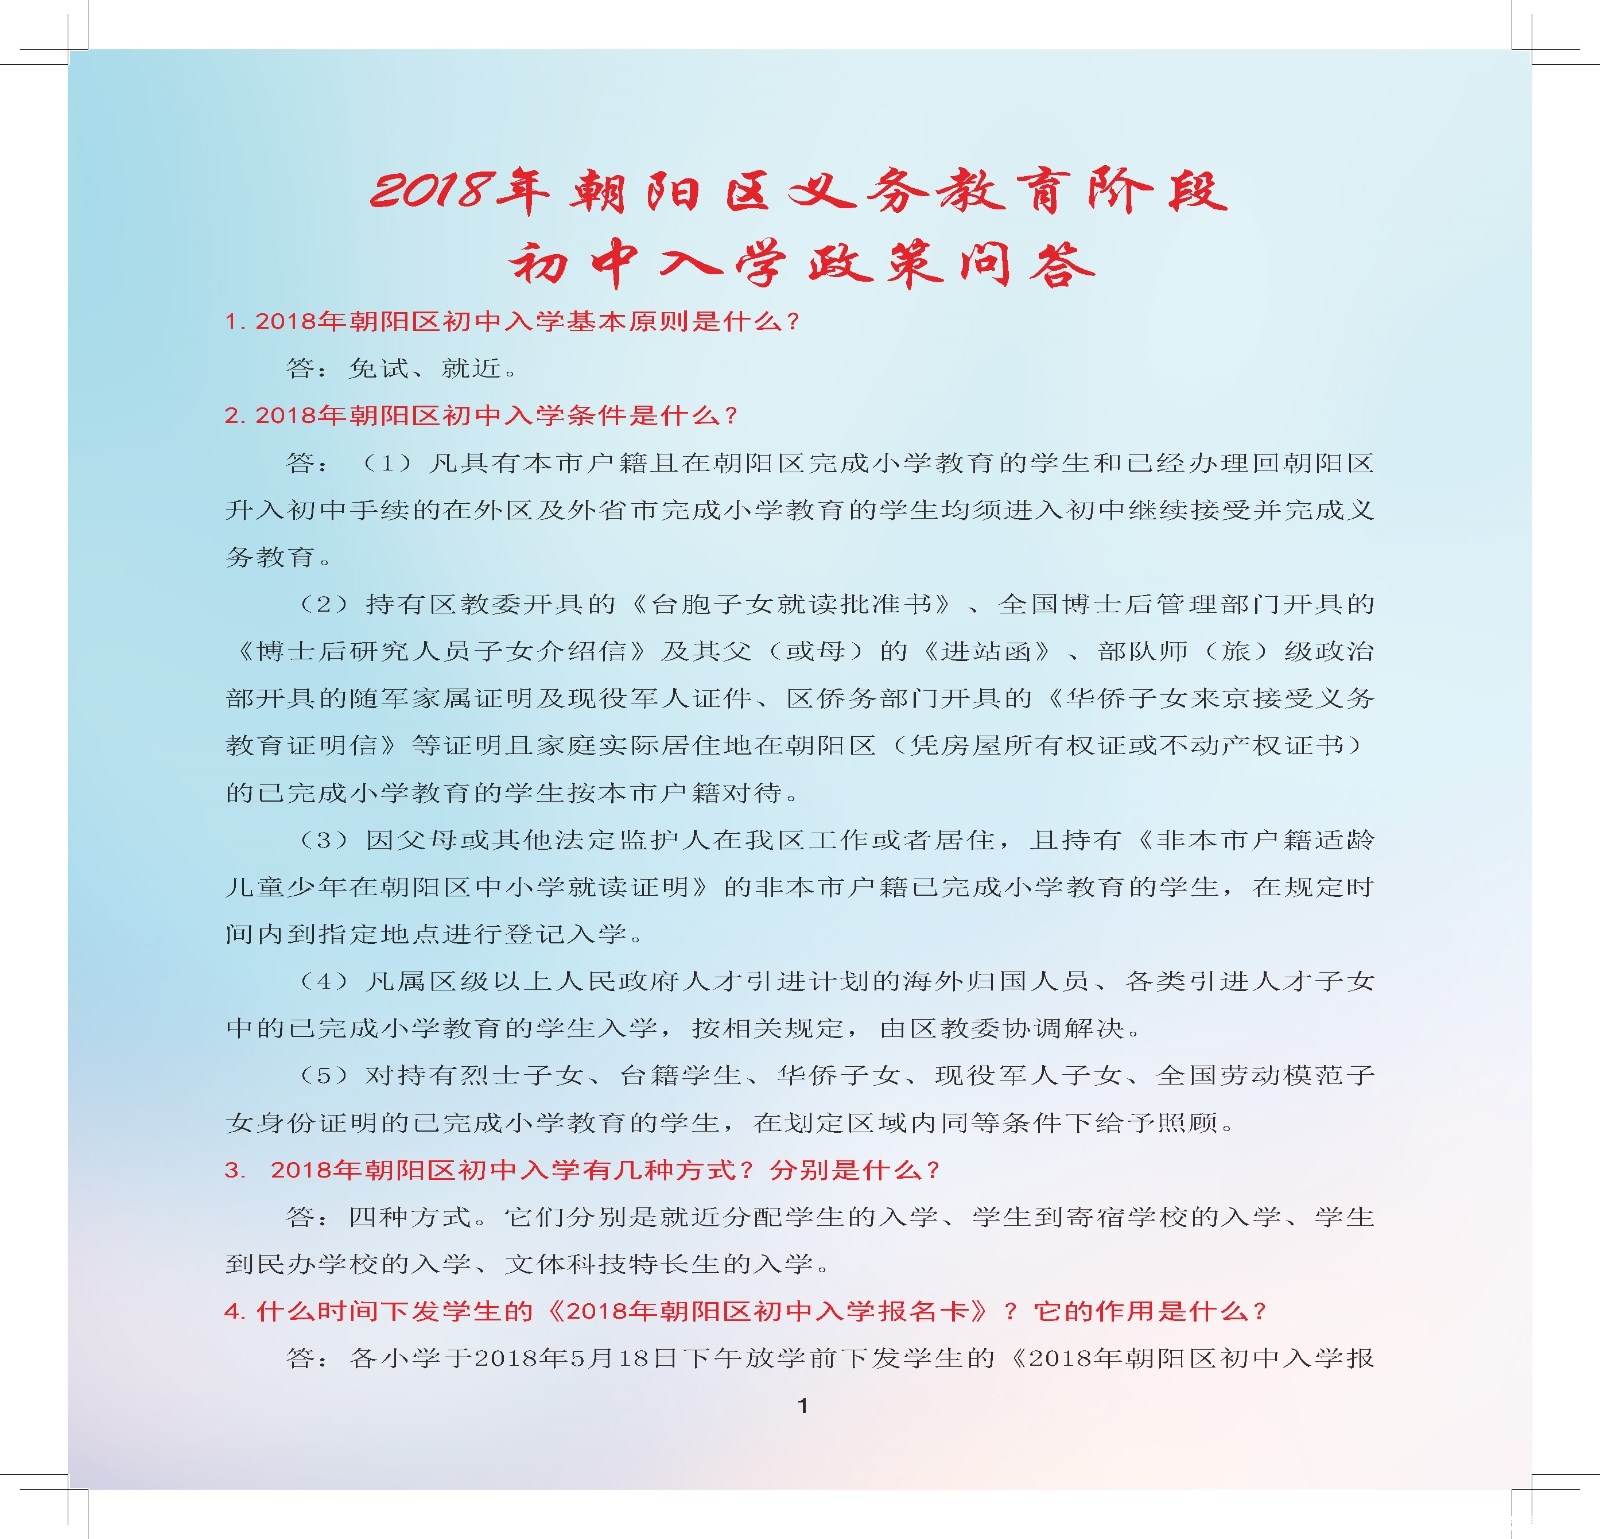 2018北京朝阳区义务教育阶段初中入学政策问答及流程手册1